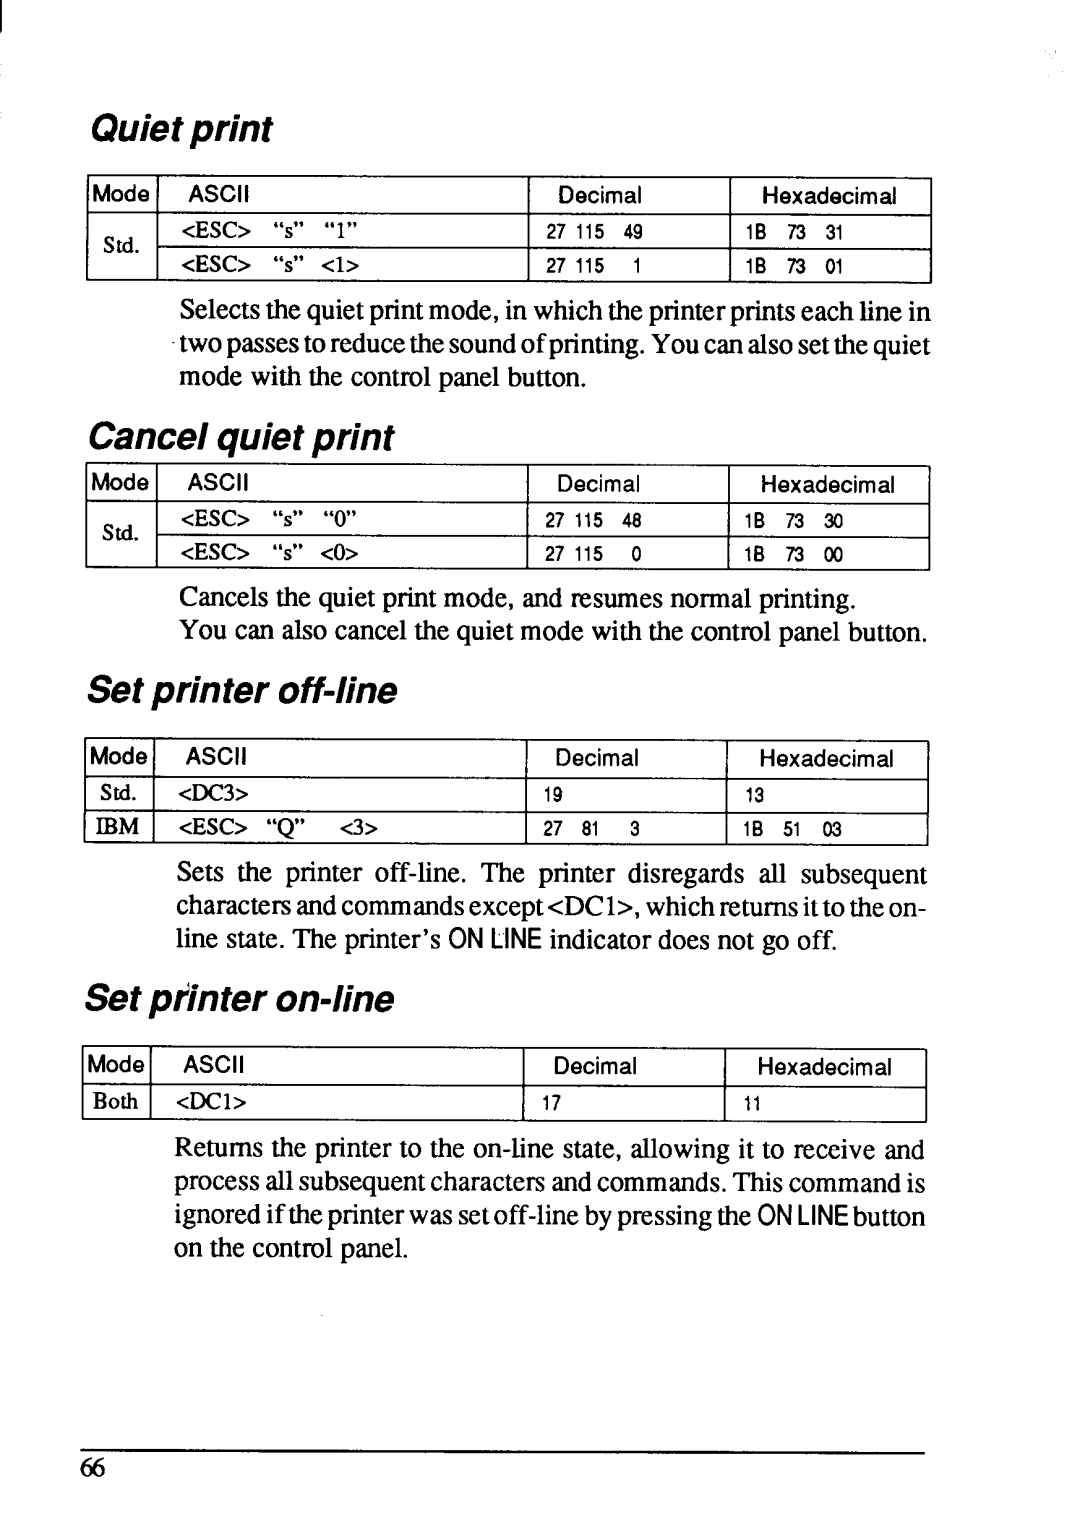 Star Micronics NX-1001 manual Cancelsthe quietprint mode, and resumesnormalprinting 